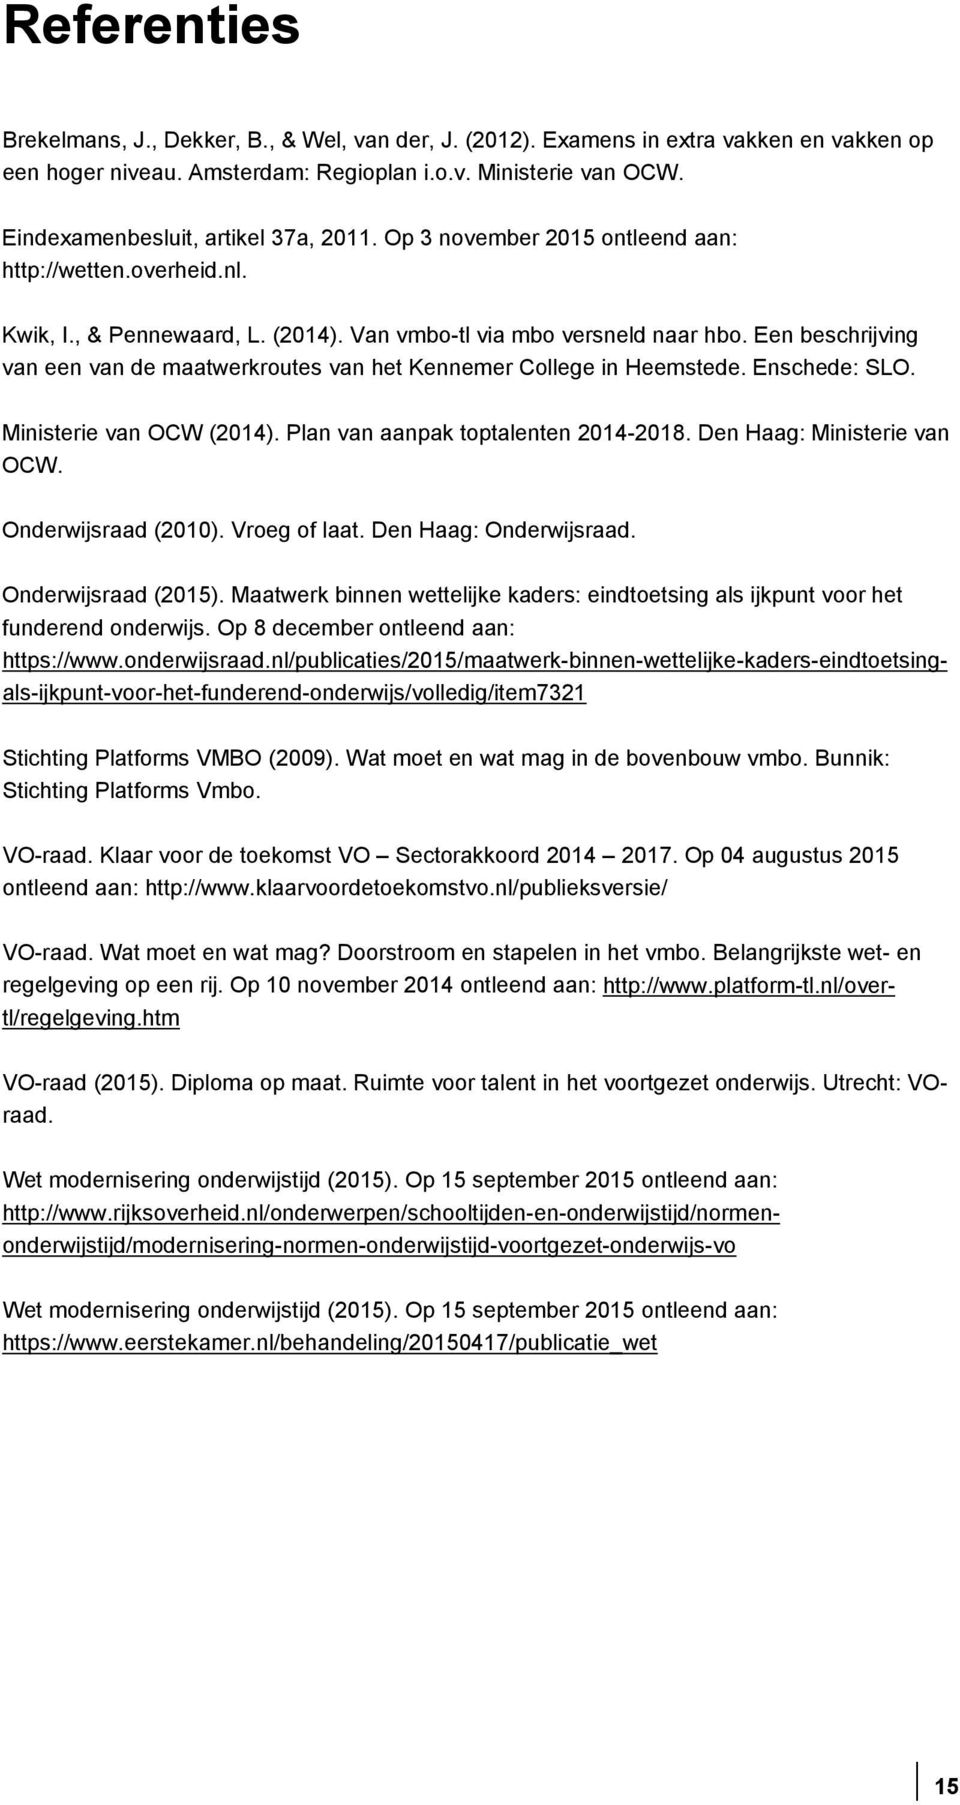 Een beschrijving van een van de maatwerkroutes van het Kennemer College in Heemstede. Enschede: SLO. Ministerie van OCW (2014). Plan van aanpak toptalenten 2014-2018. Den Haag: Ministerie van OCW.